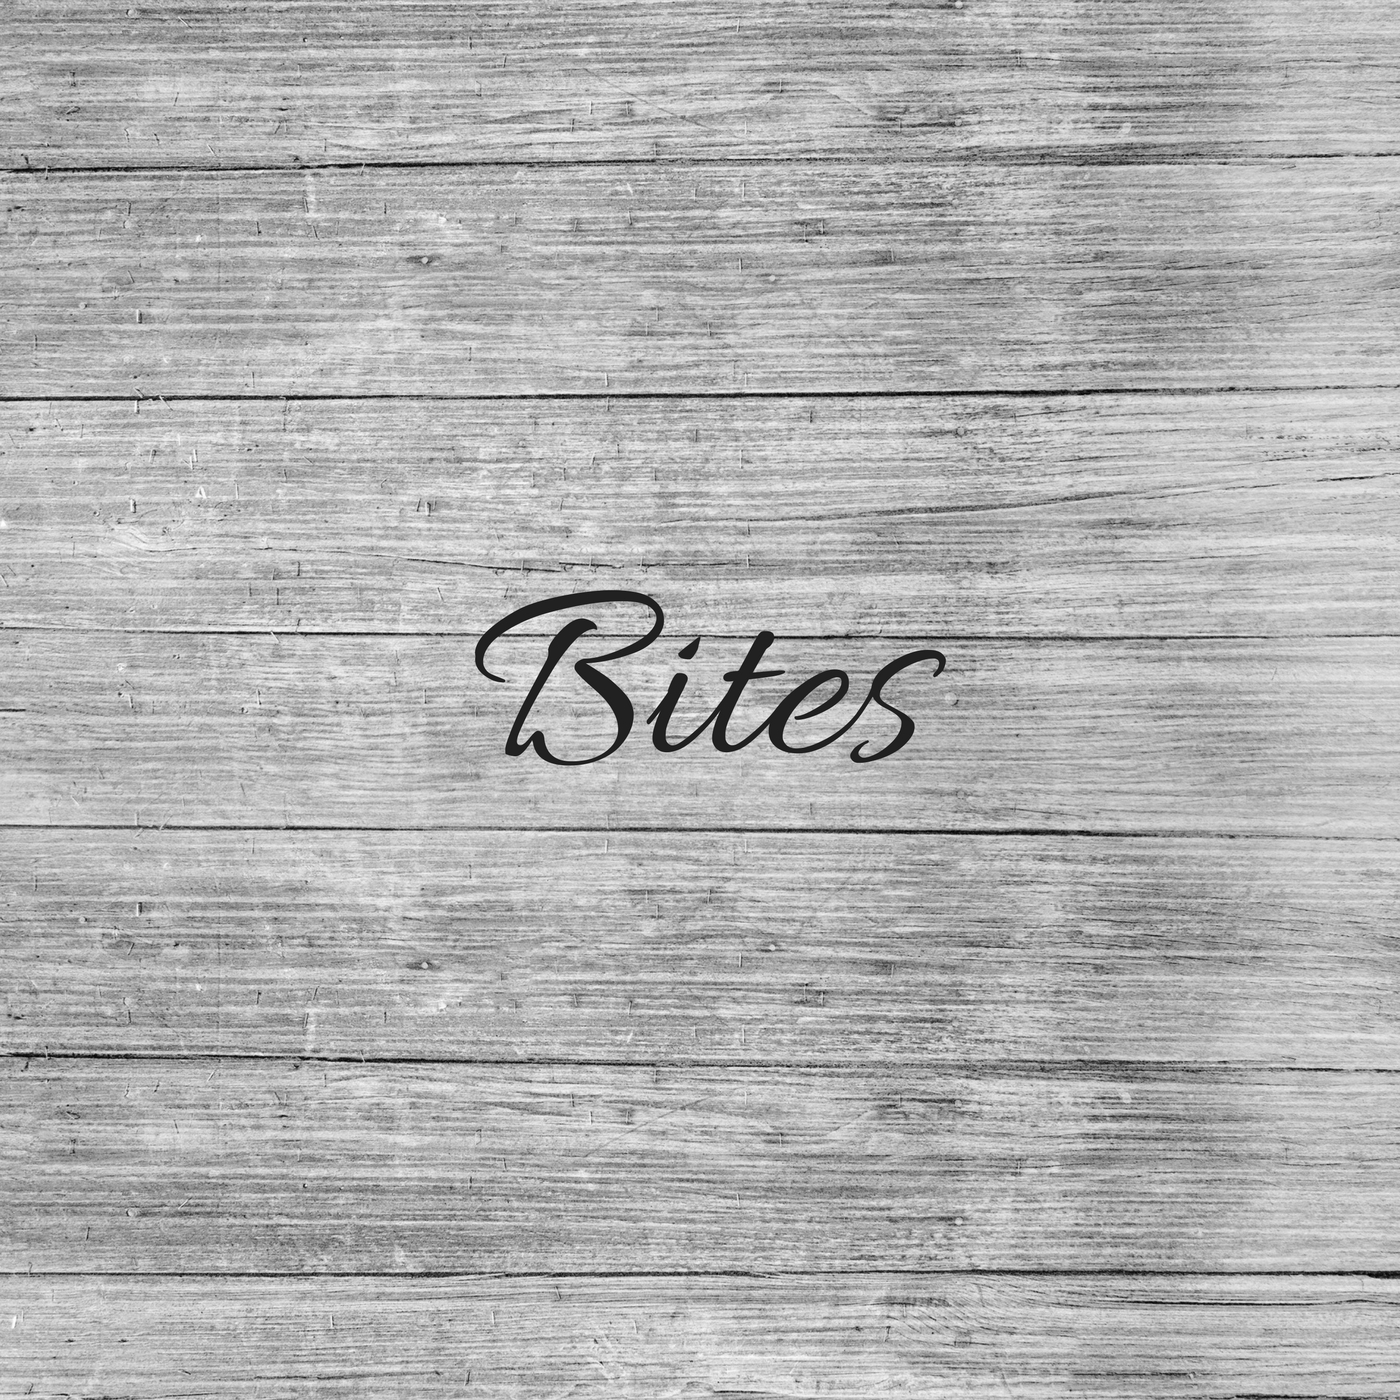 Bites Grey.jpg